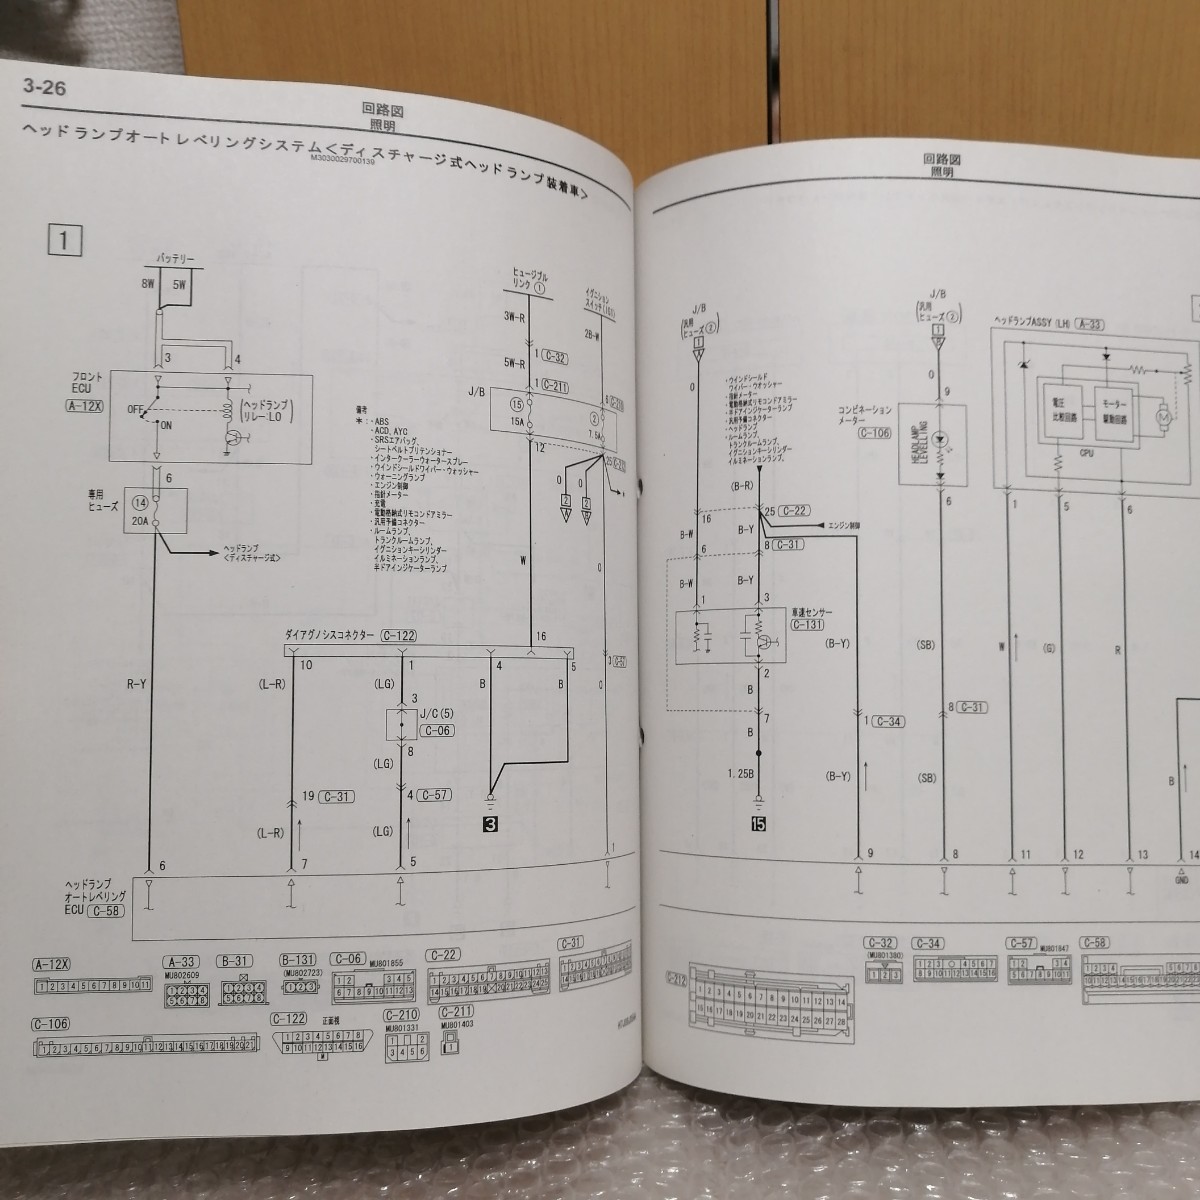 三菱 ランサーエボリューション9MR 整備解説書 電気配線図集 追補版 2006-8・CT9A ランエボ LANCER Evolution ⅨMR 1036K84_画像5